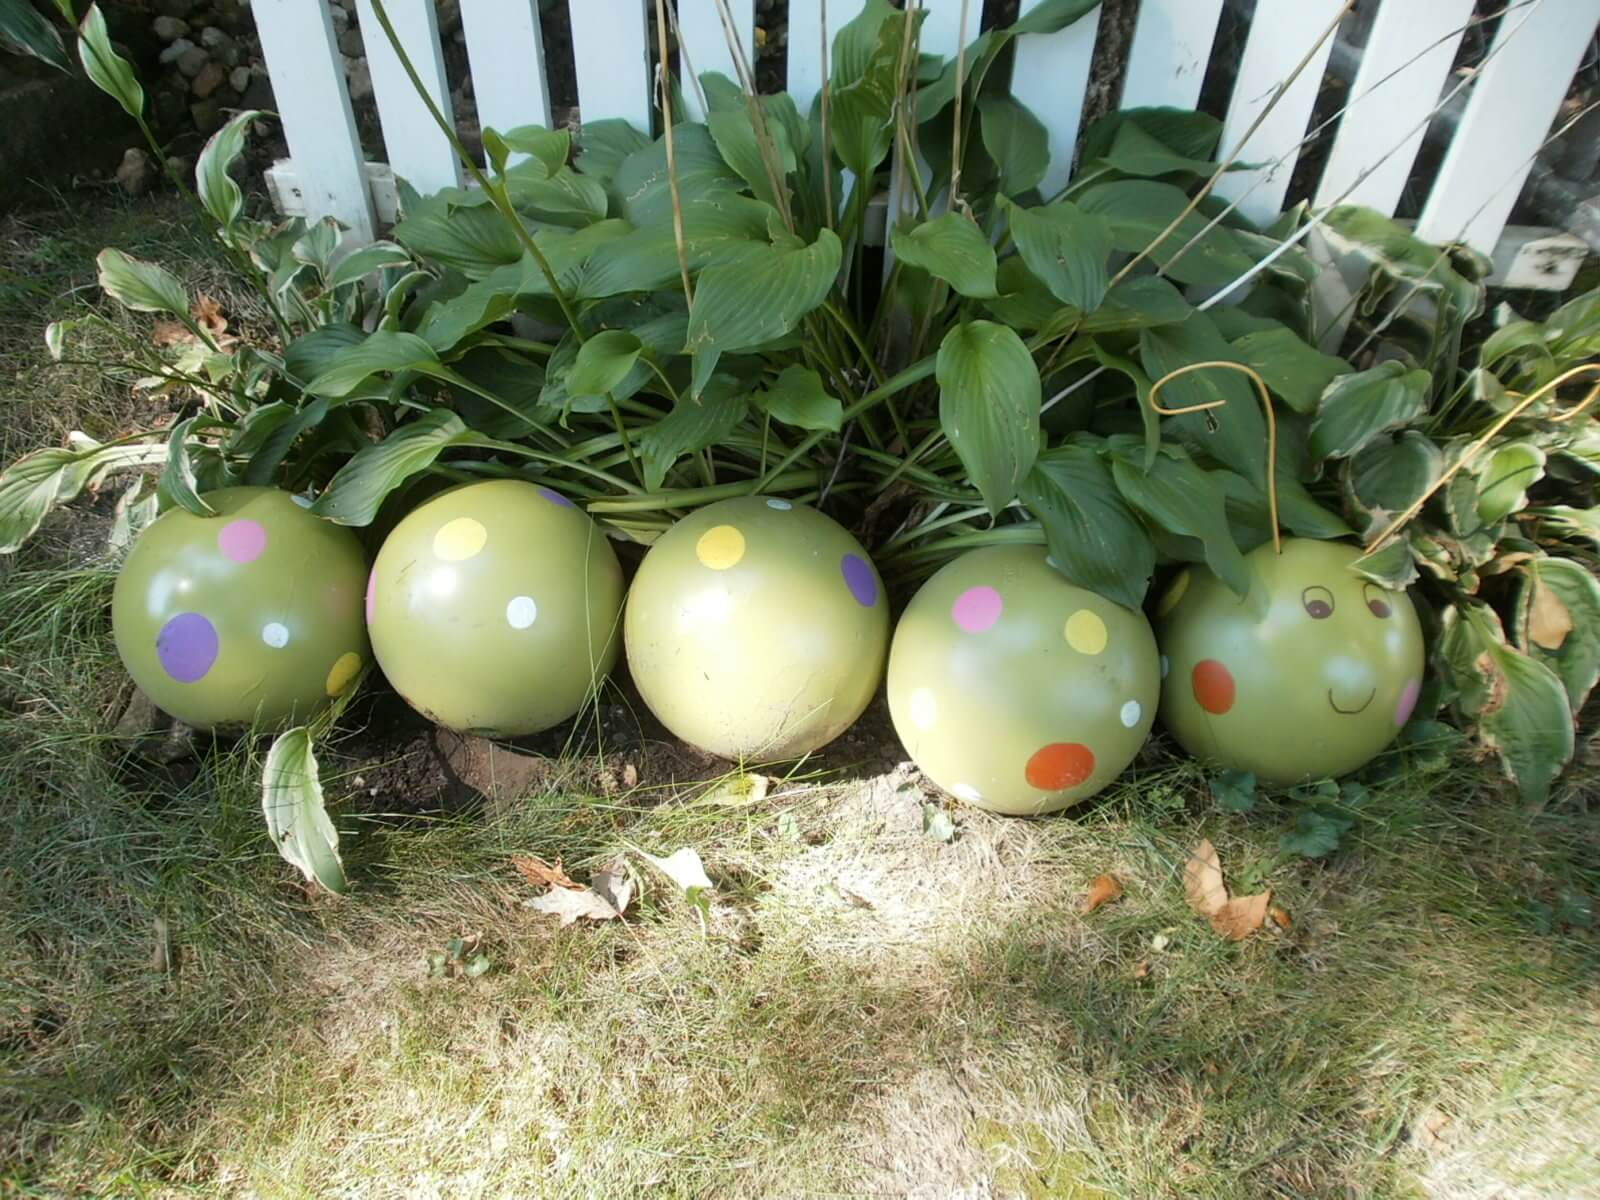 You Can Make This Adorable Caterpillar | DIY Garden Ball Ideas